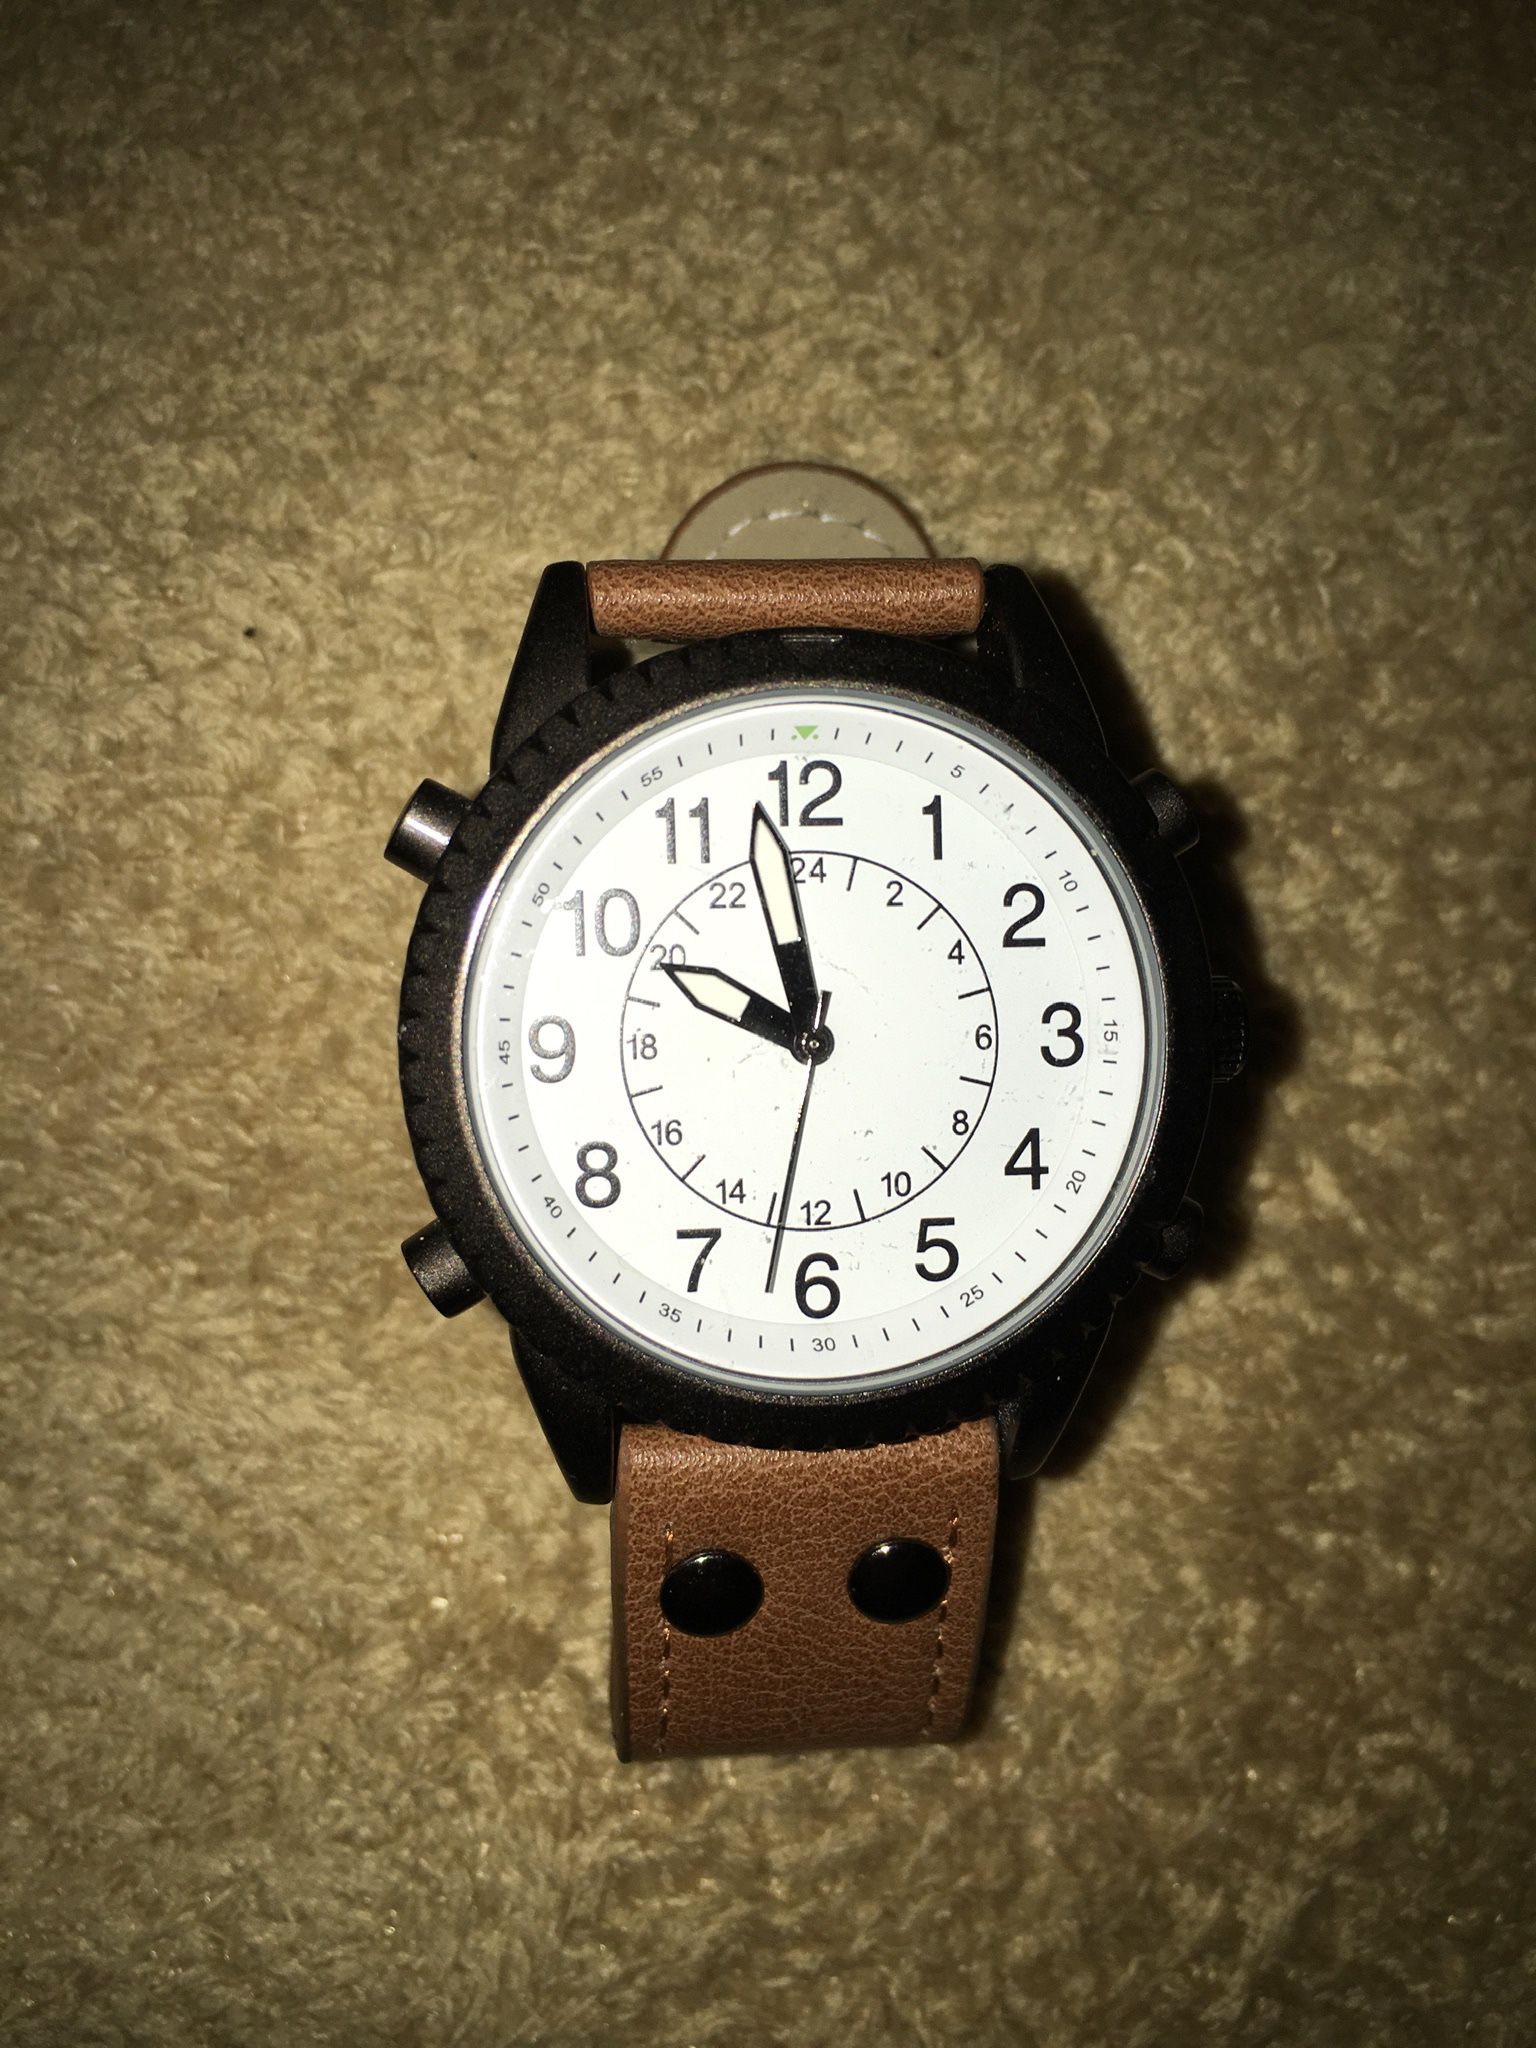 Brand new Wristwatch.